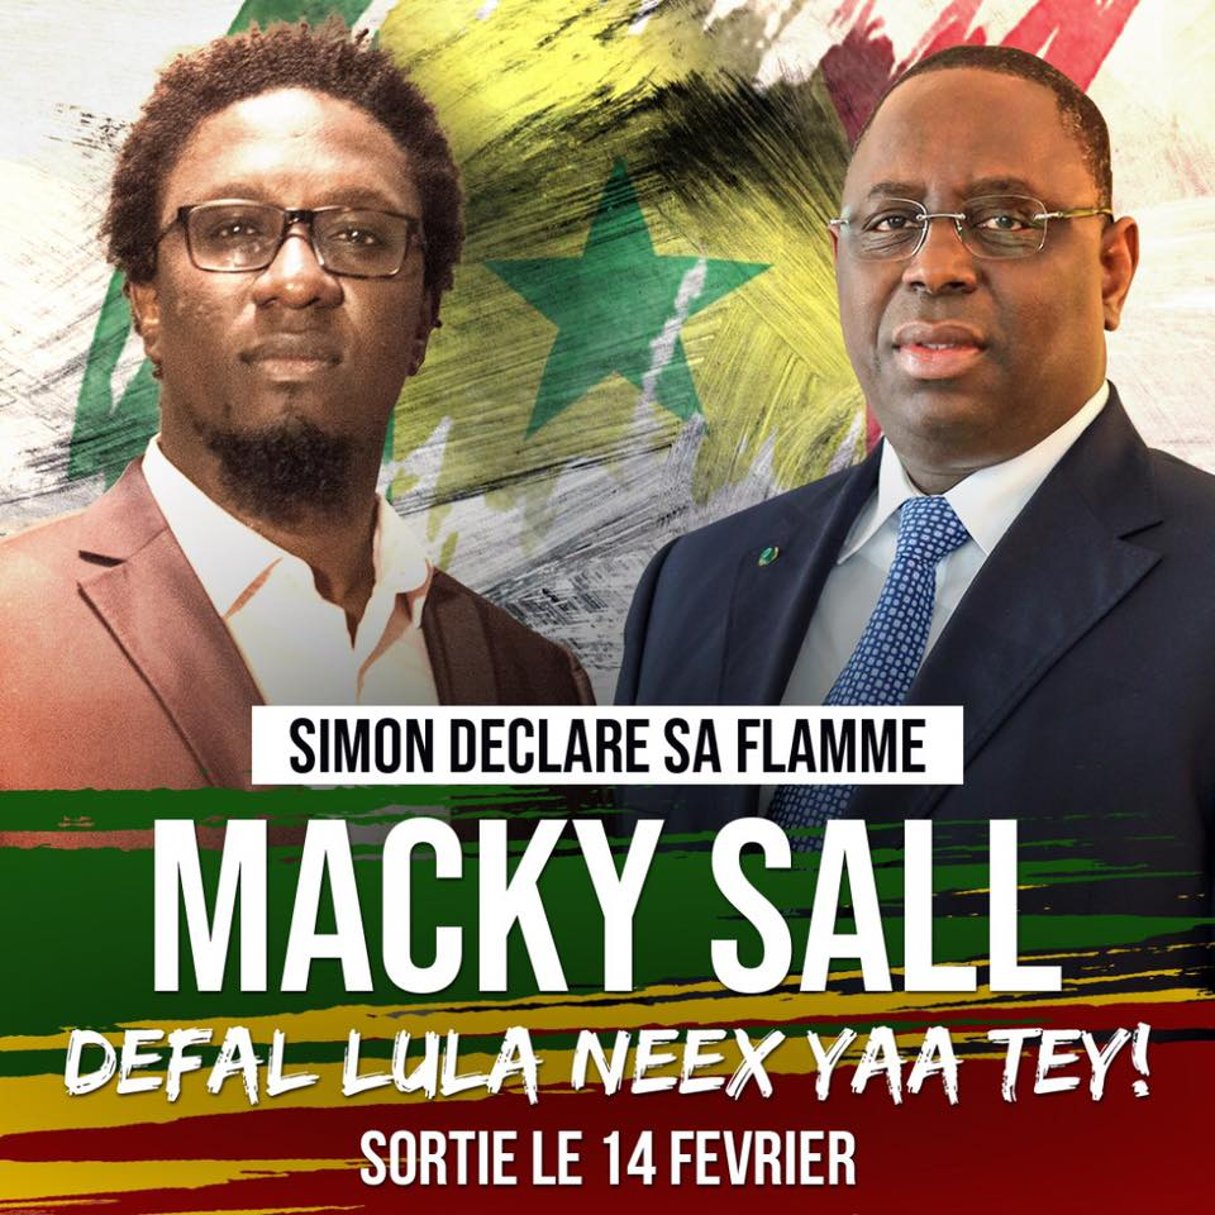 Affiche du morceau « Yaa Tey ! » du rappeur Simon Kouka, dans lequel il « déclare sa flamme » à Macky Sall. © Facebook/Simon Kouka